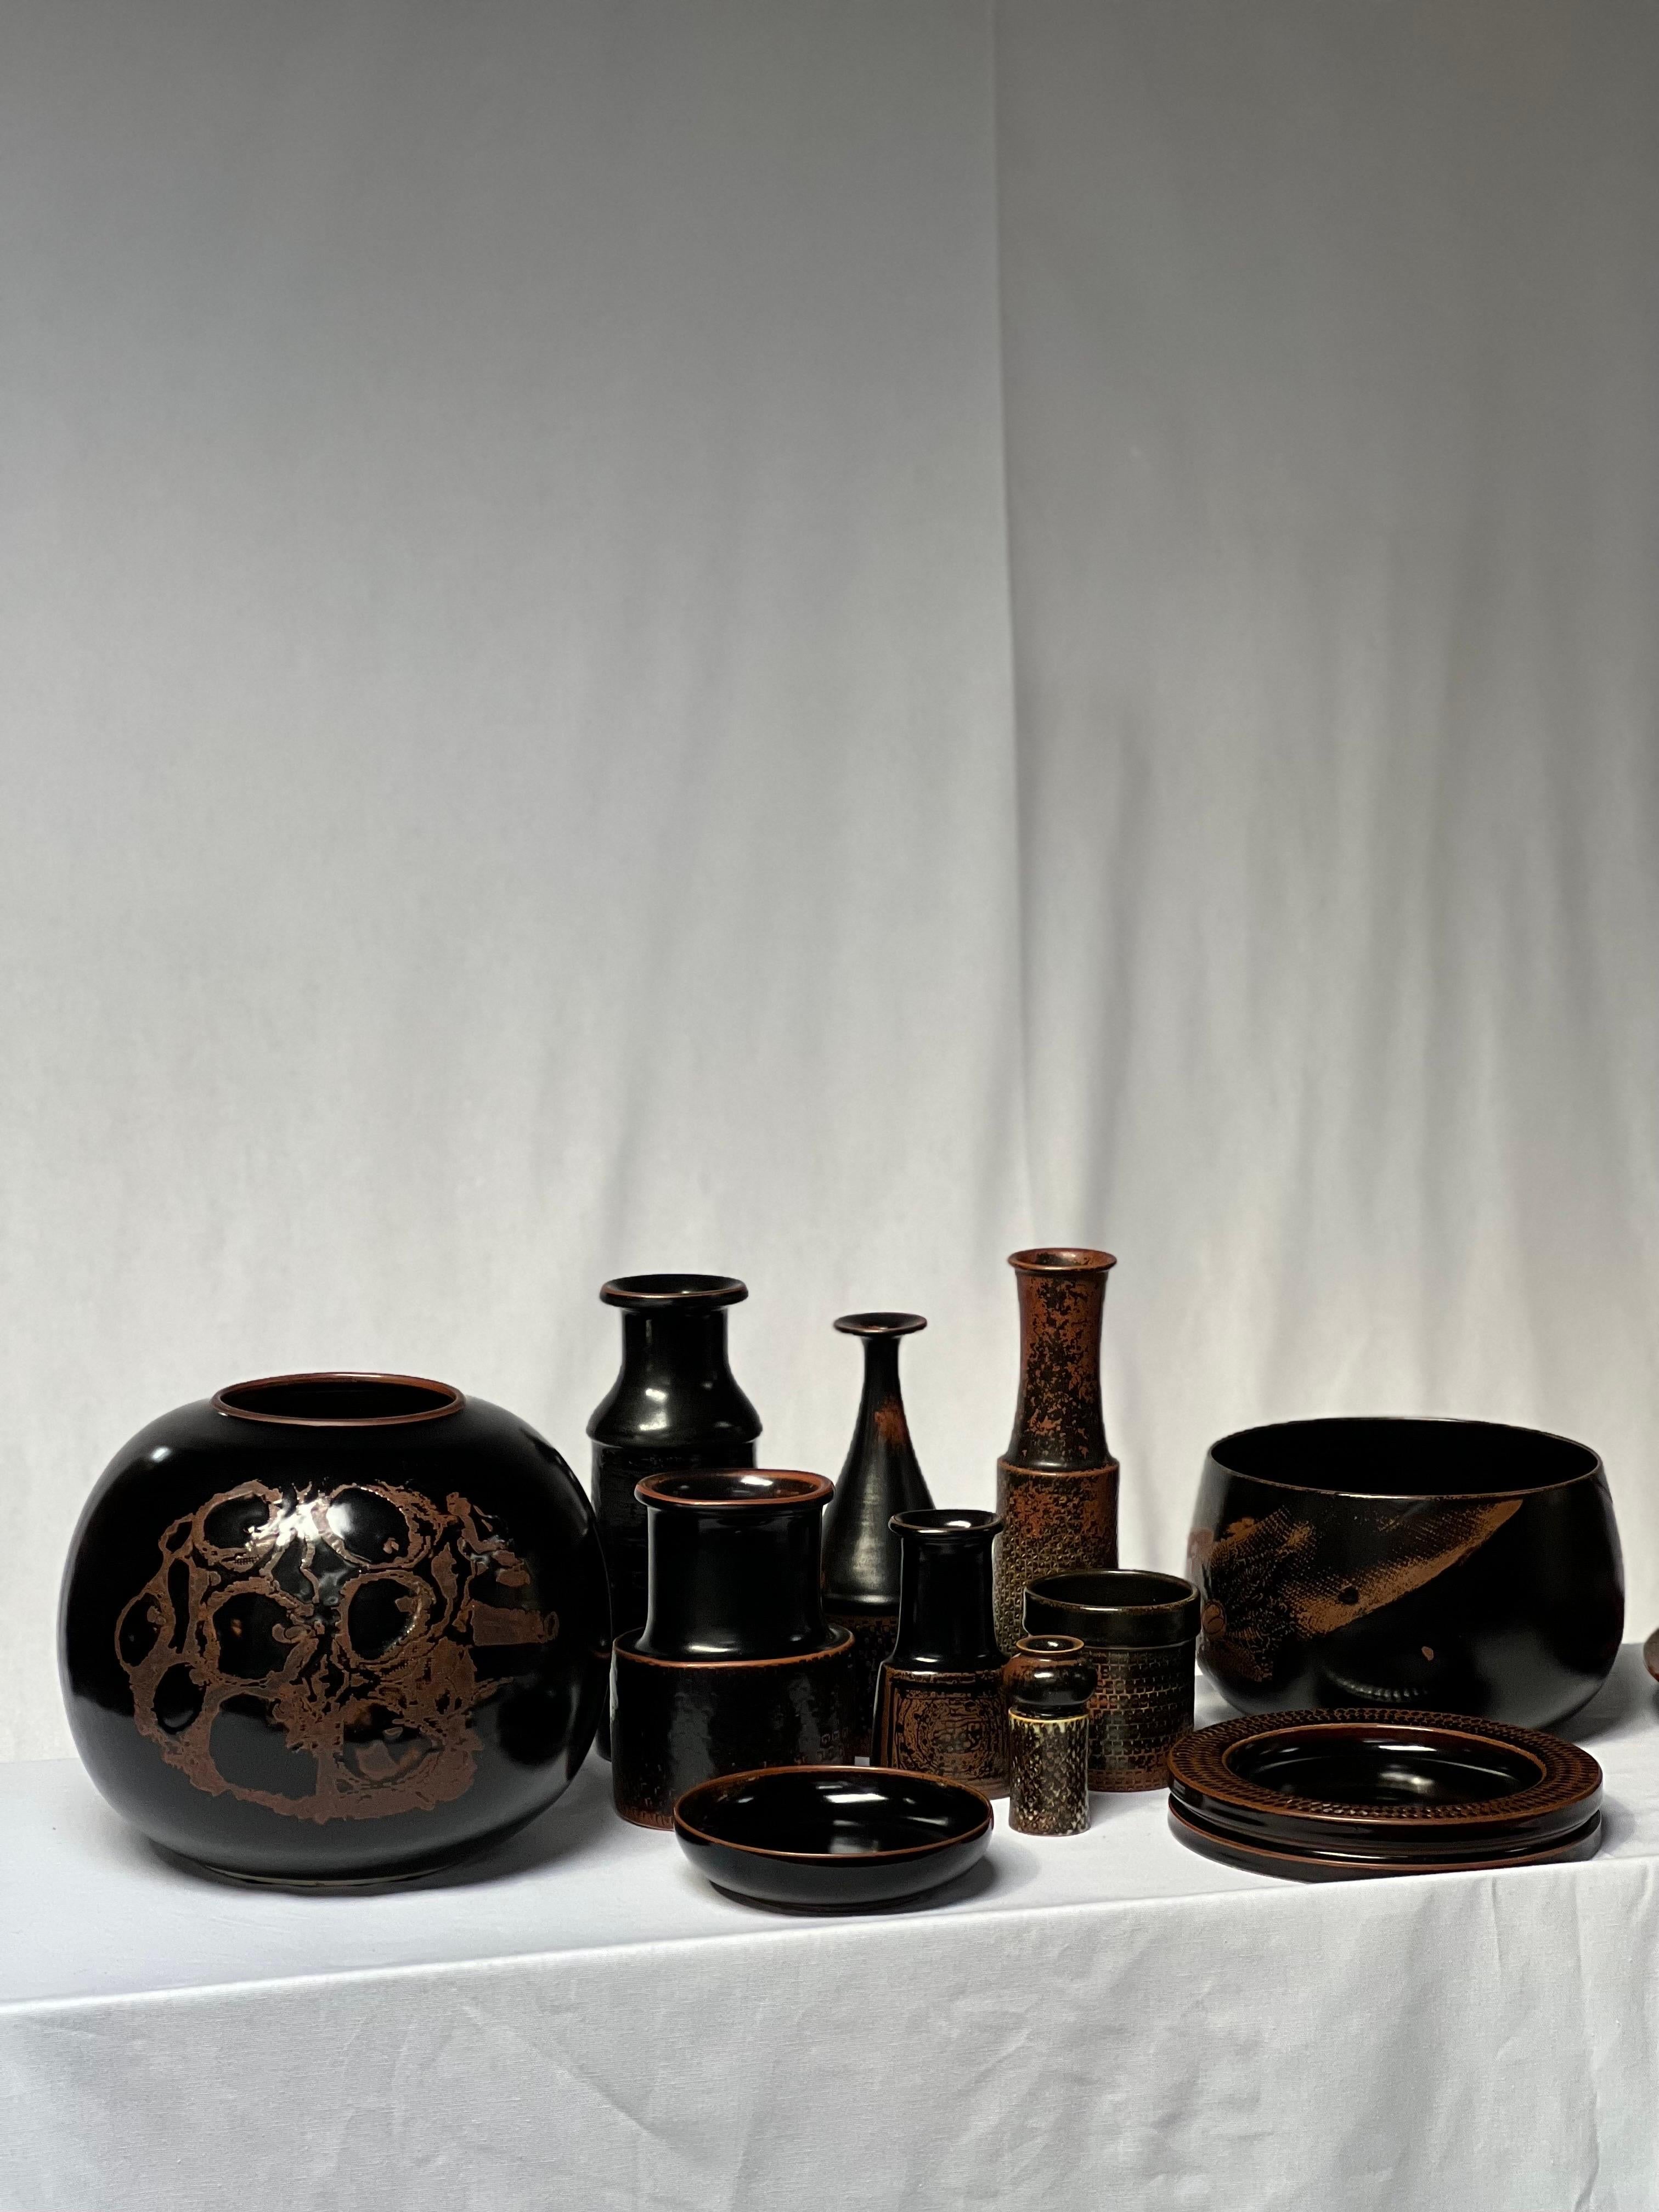 Stig Lindberg Unique Vase in black Glaze Tenmoku Made by Hand Sweden 1969 For Sale 7